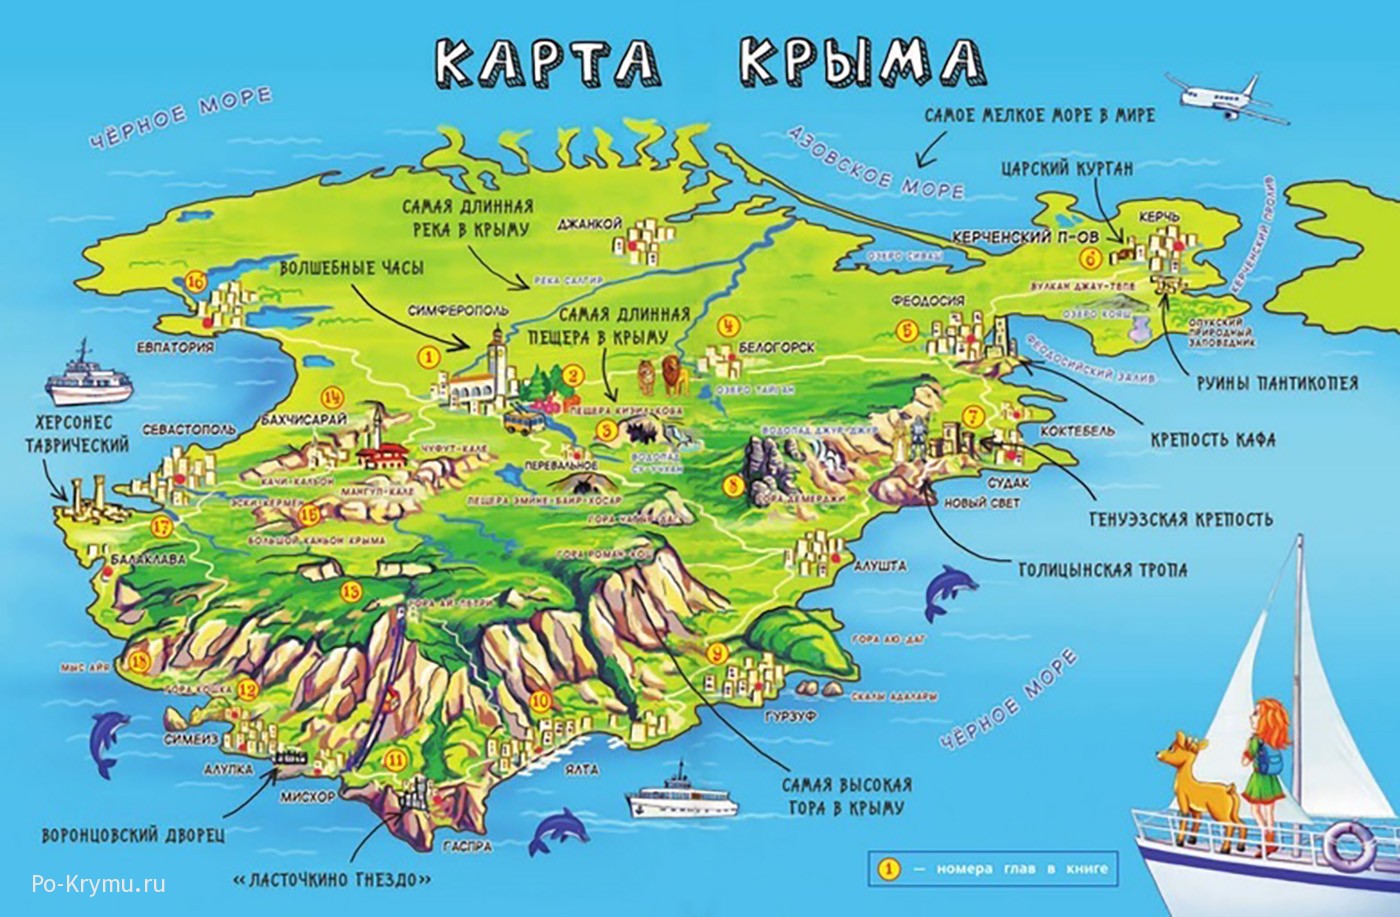 Подробные карты Крыма - достопримечательности, пляжи, дороги